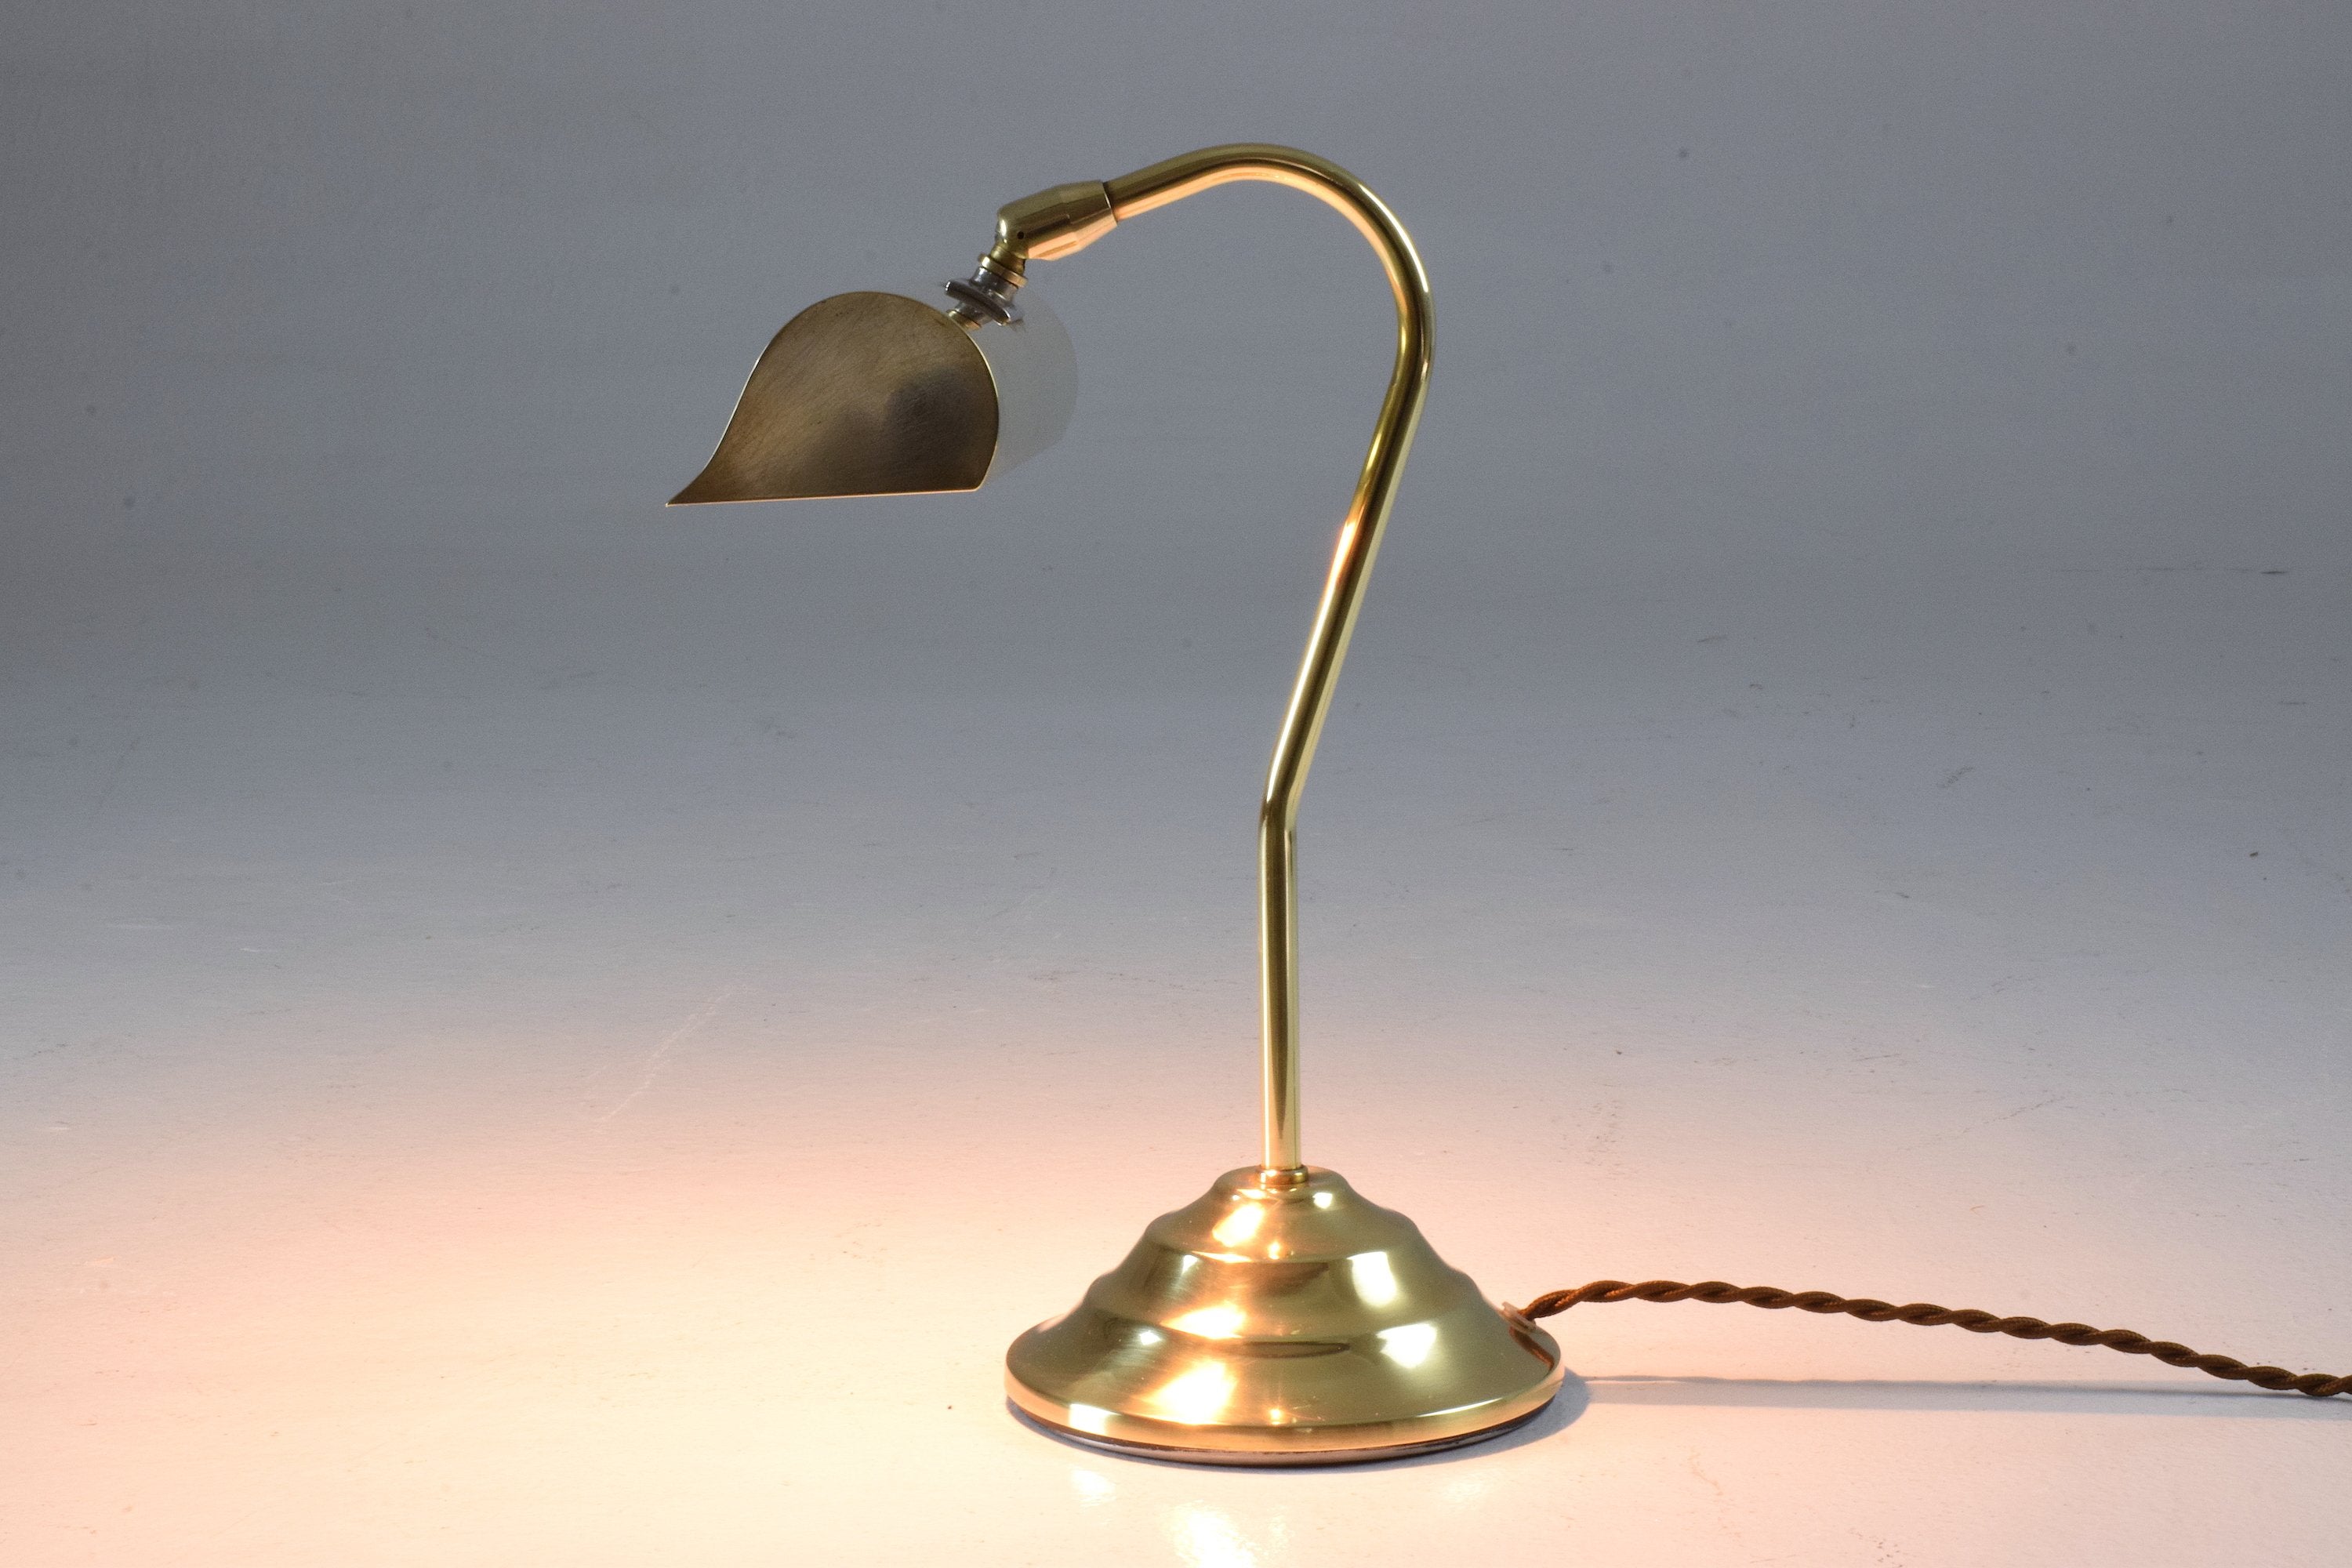 Pied de Lampe rétro des années 1950 - brokepoque - Retro Lamp 1950